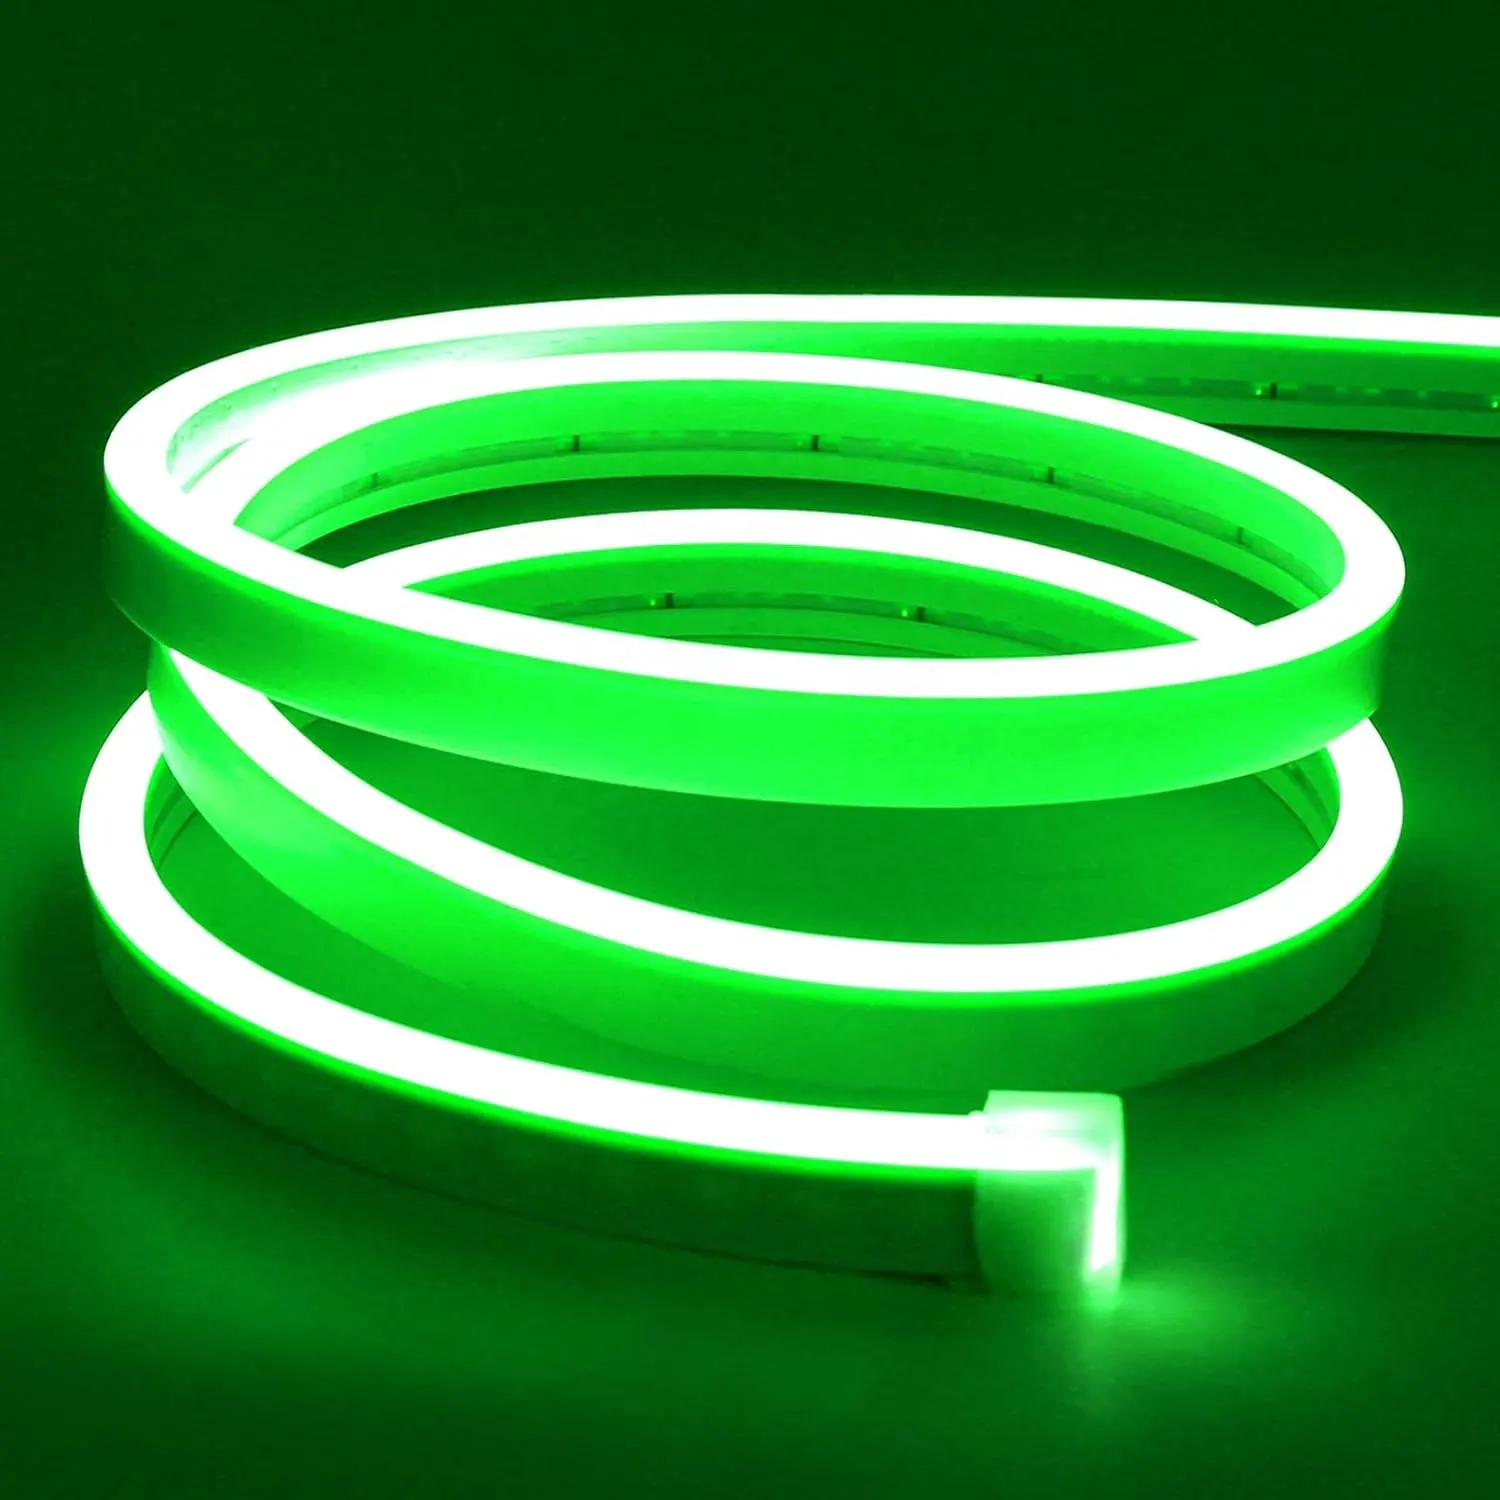 شريط إضاءة نيون مرن أخضر LED، أضواء بحبل نيون 16.4 قدم للأماكن الداخلية/المكشوفة، شريط إضاءة ليد قابل للتقطيع لغرف النوم والمتاجر والفنادق